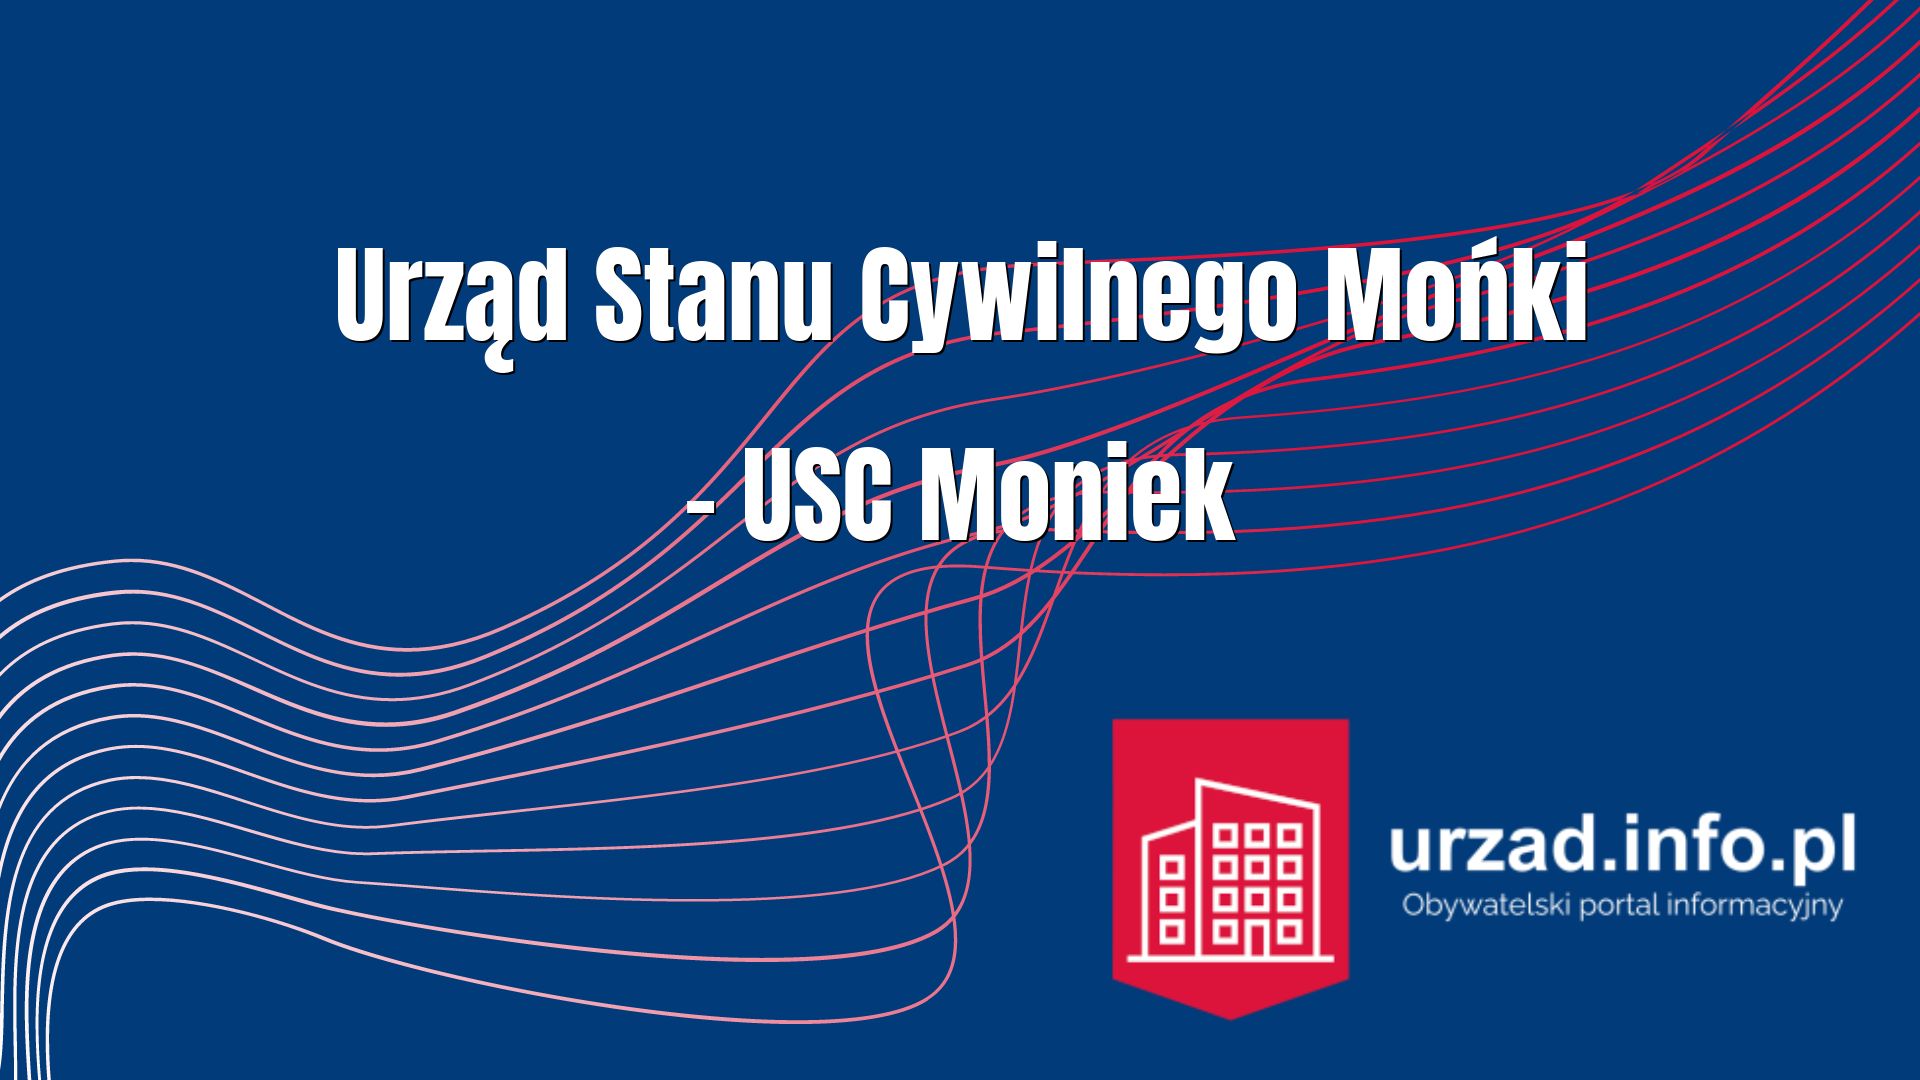 Urząd Stanu Cywilnego Mońki – USC Moniek